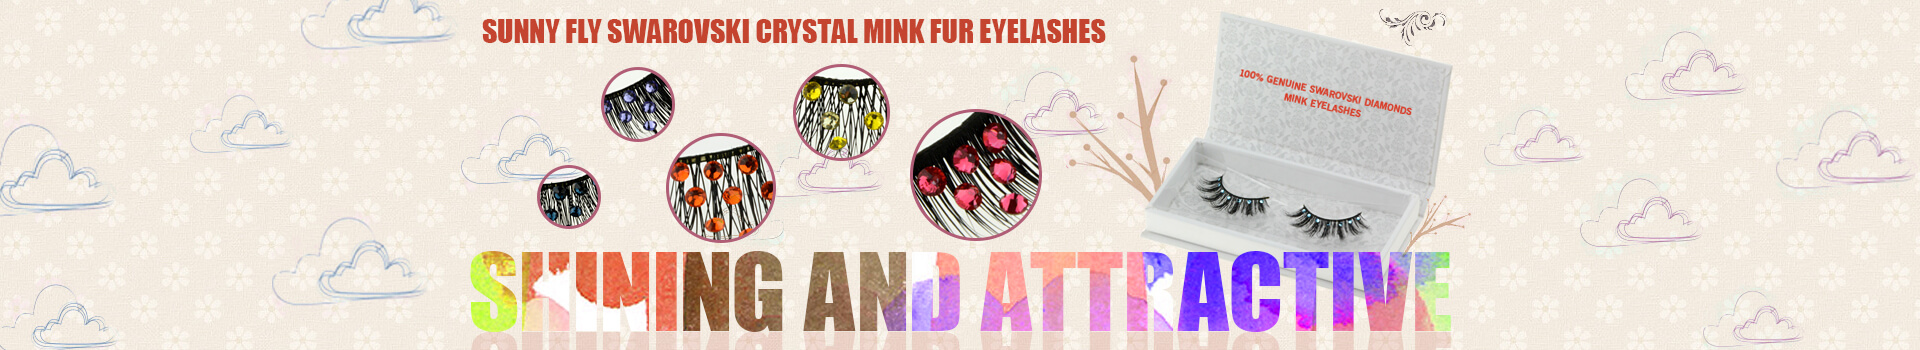 Swarovski Crystal Mink Fur Eyelashes